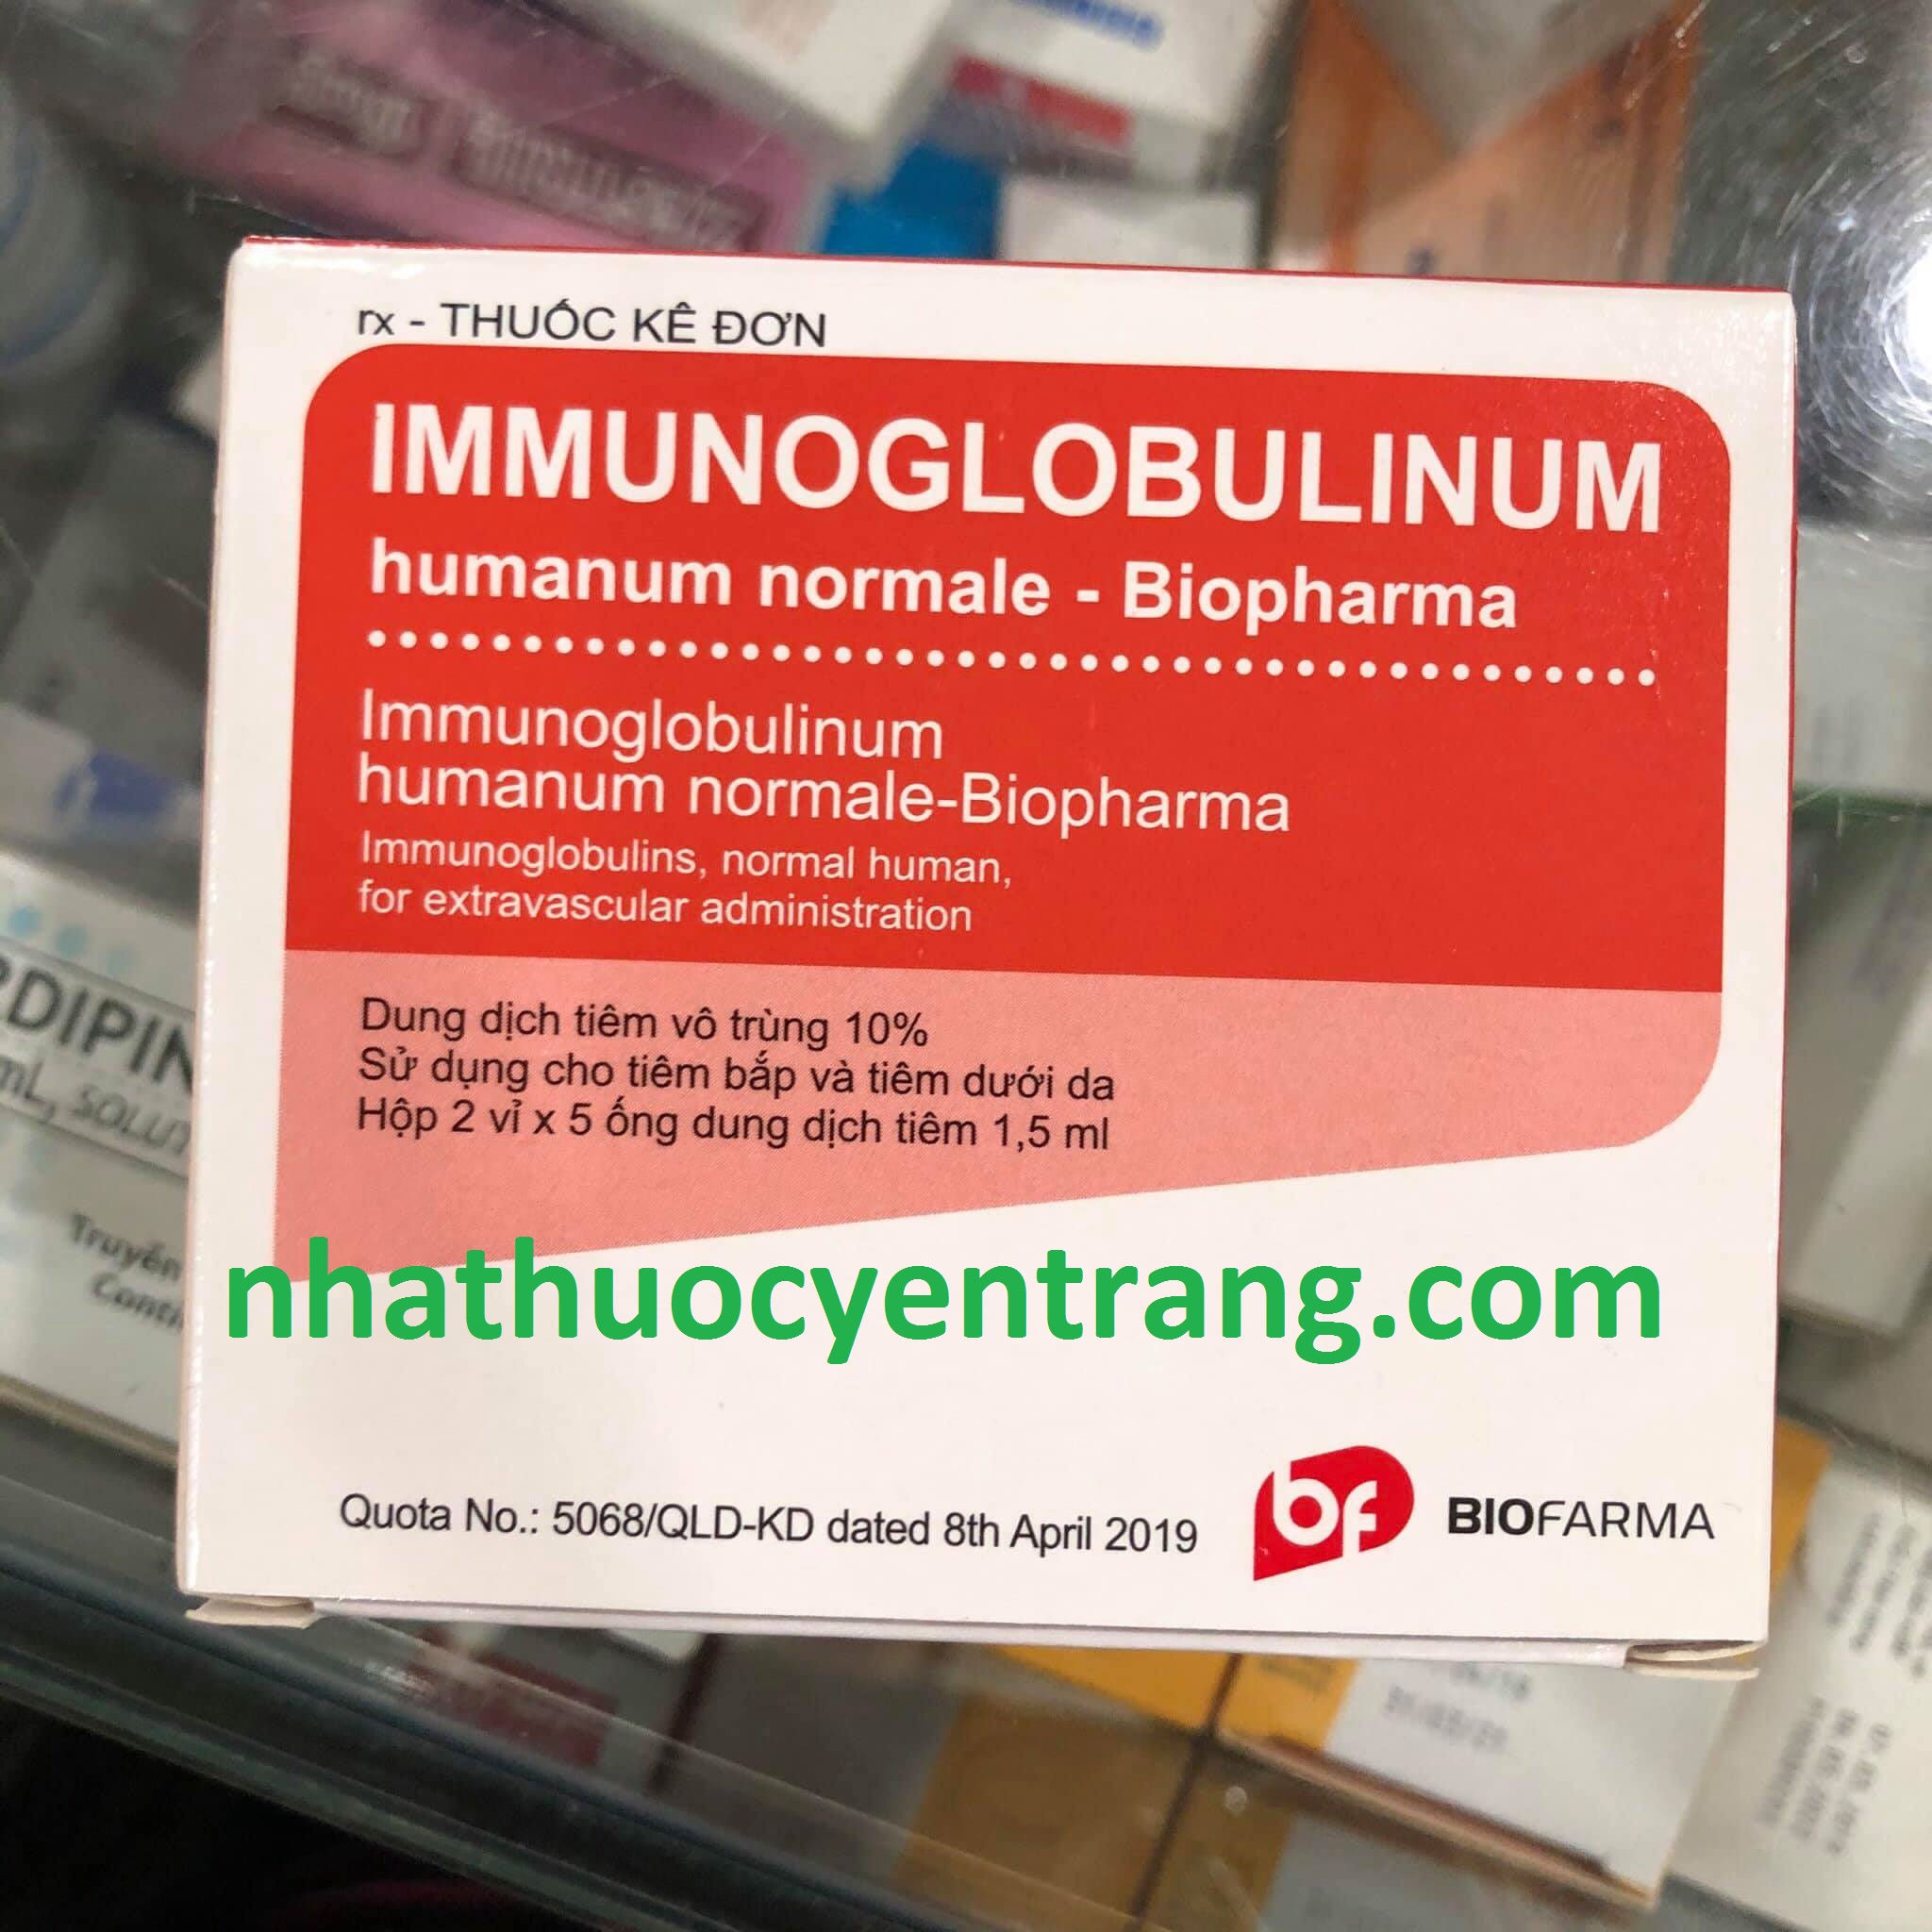 Immunoglobulinum